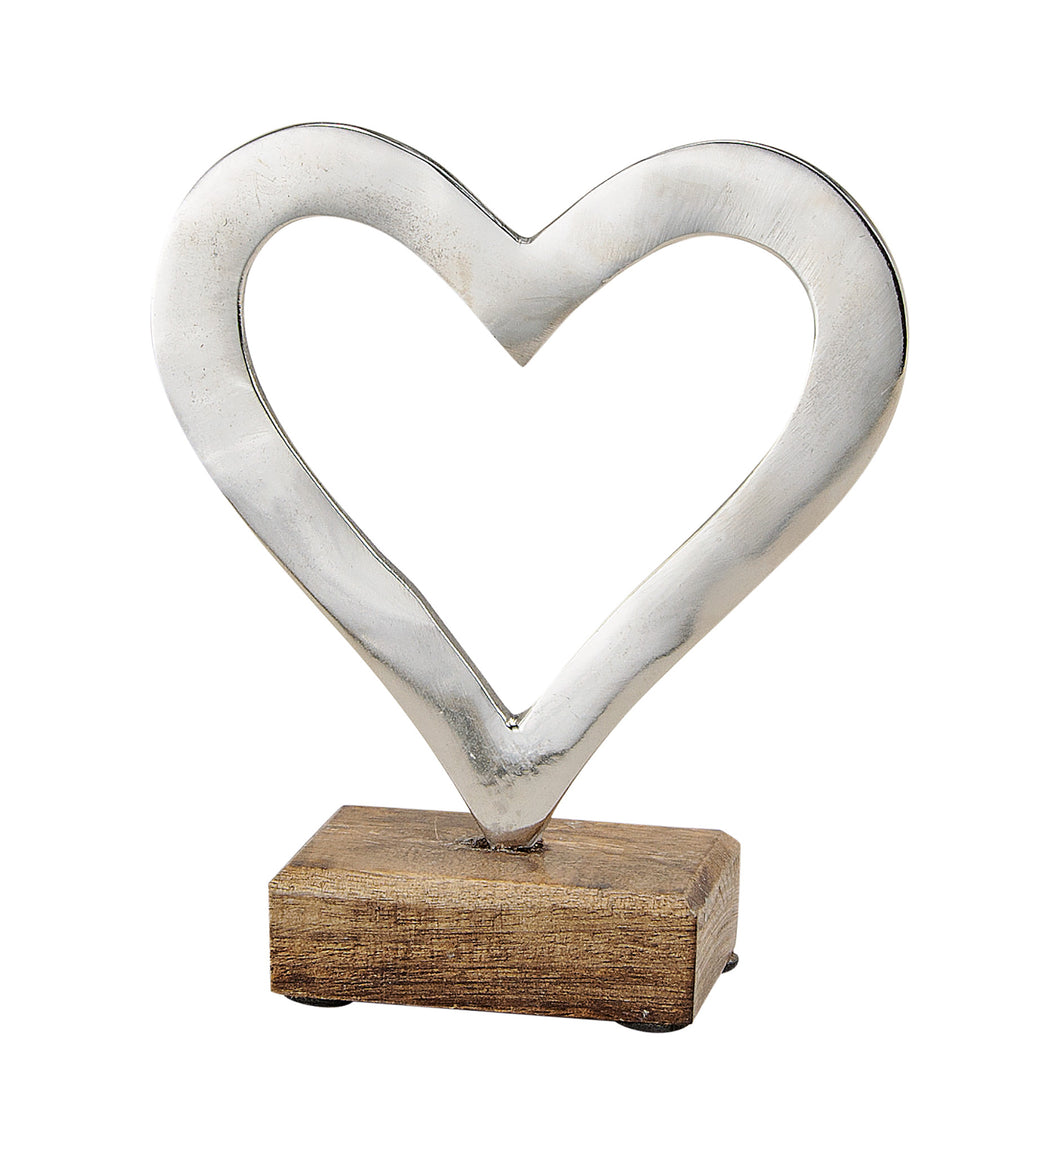 Für Verliebte: Herz aus Metall auf Mangoholz - MOPO-Shop